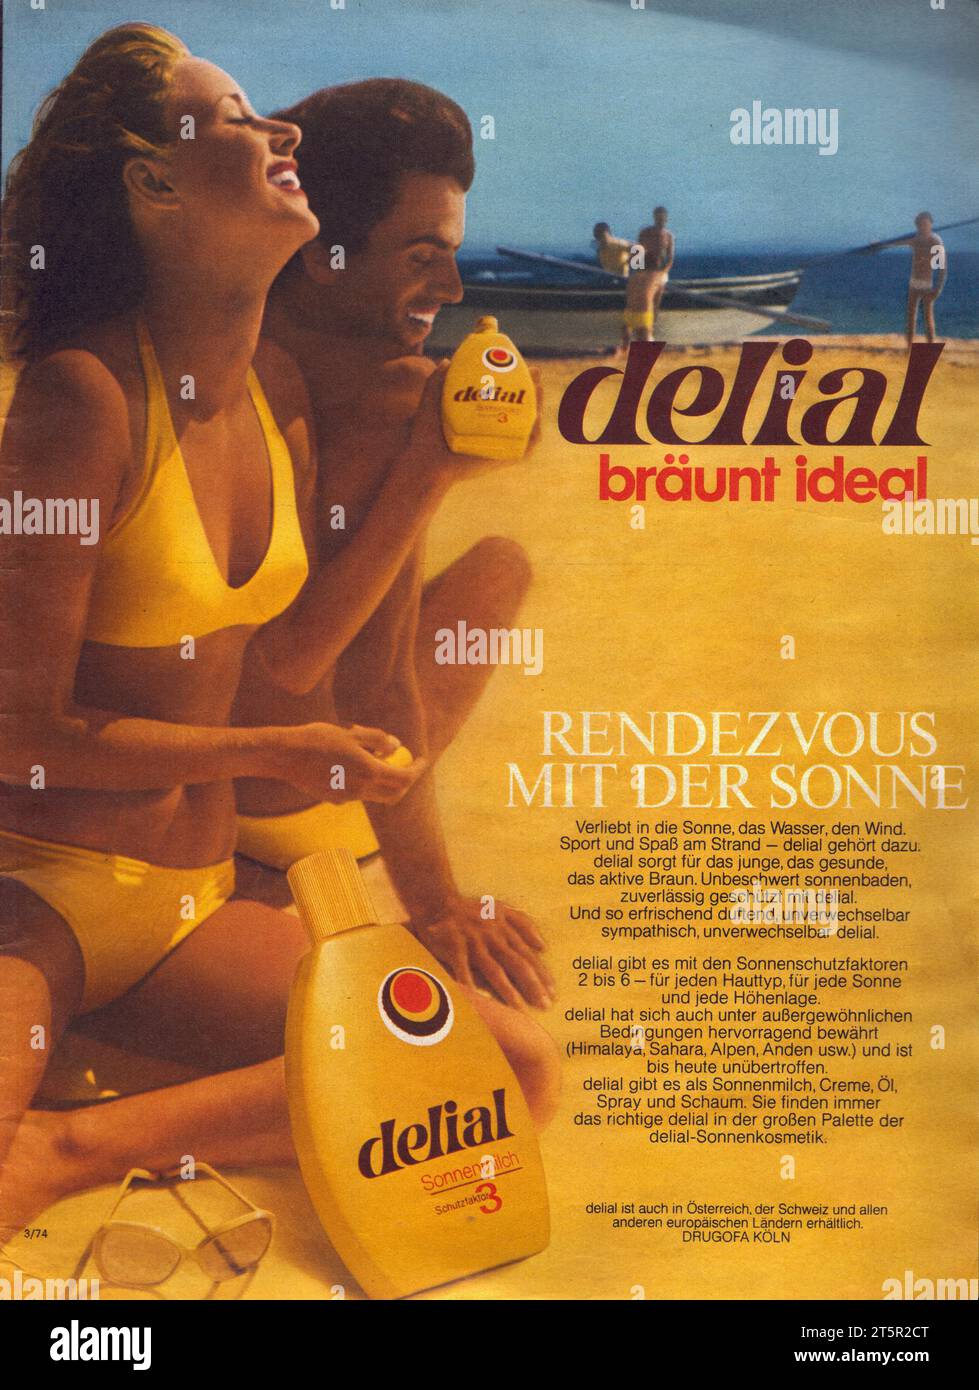 Delial Sonnenmilch Schutzfactor Rendezvous mit der Sonne Stock Photo